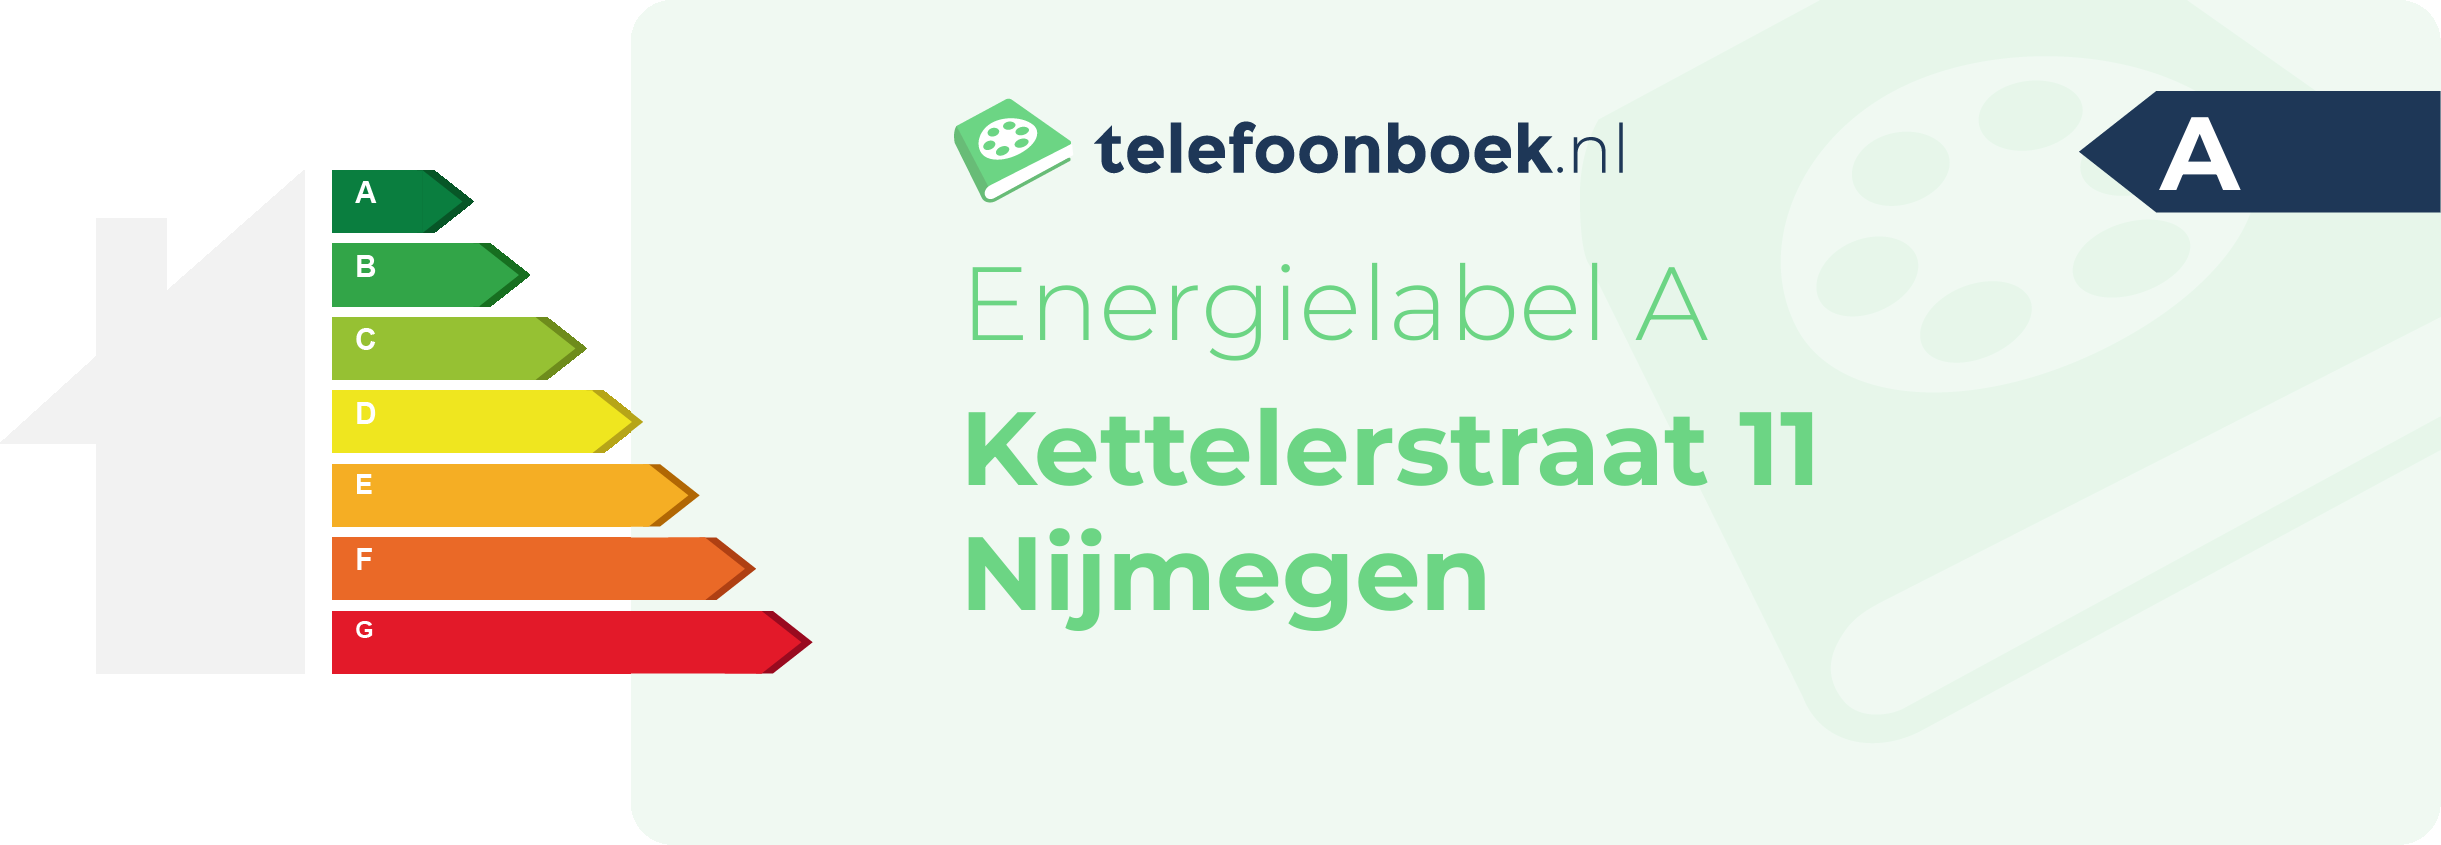 Energielabel Kettelerstraat 11 Nijmegen